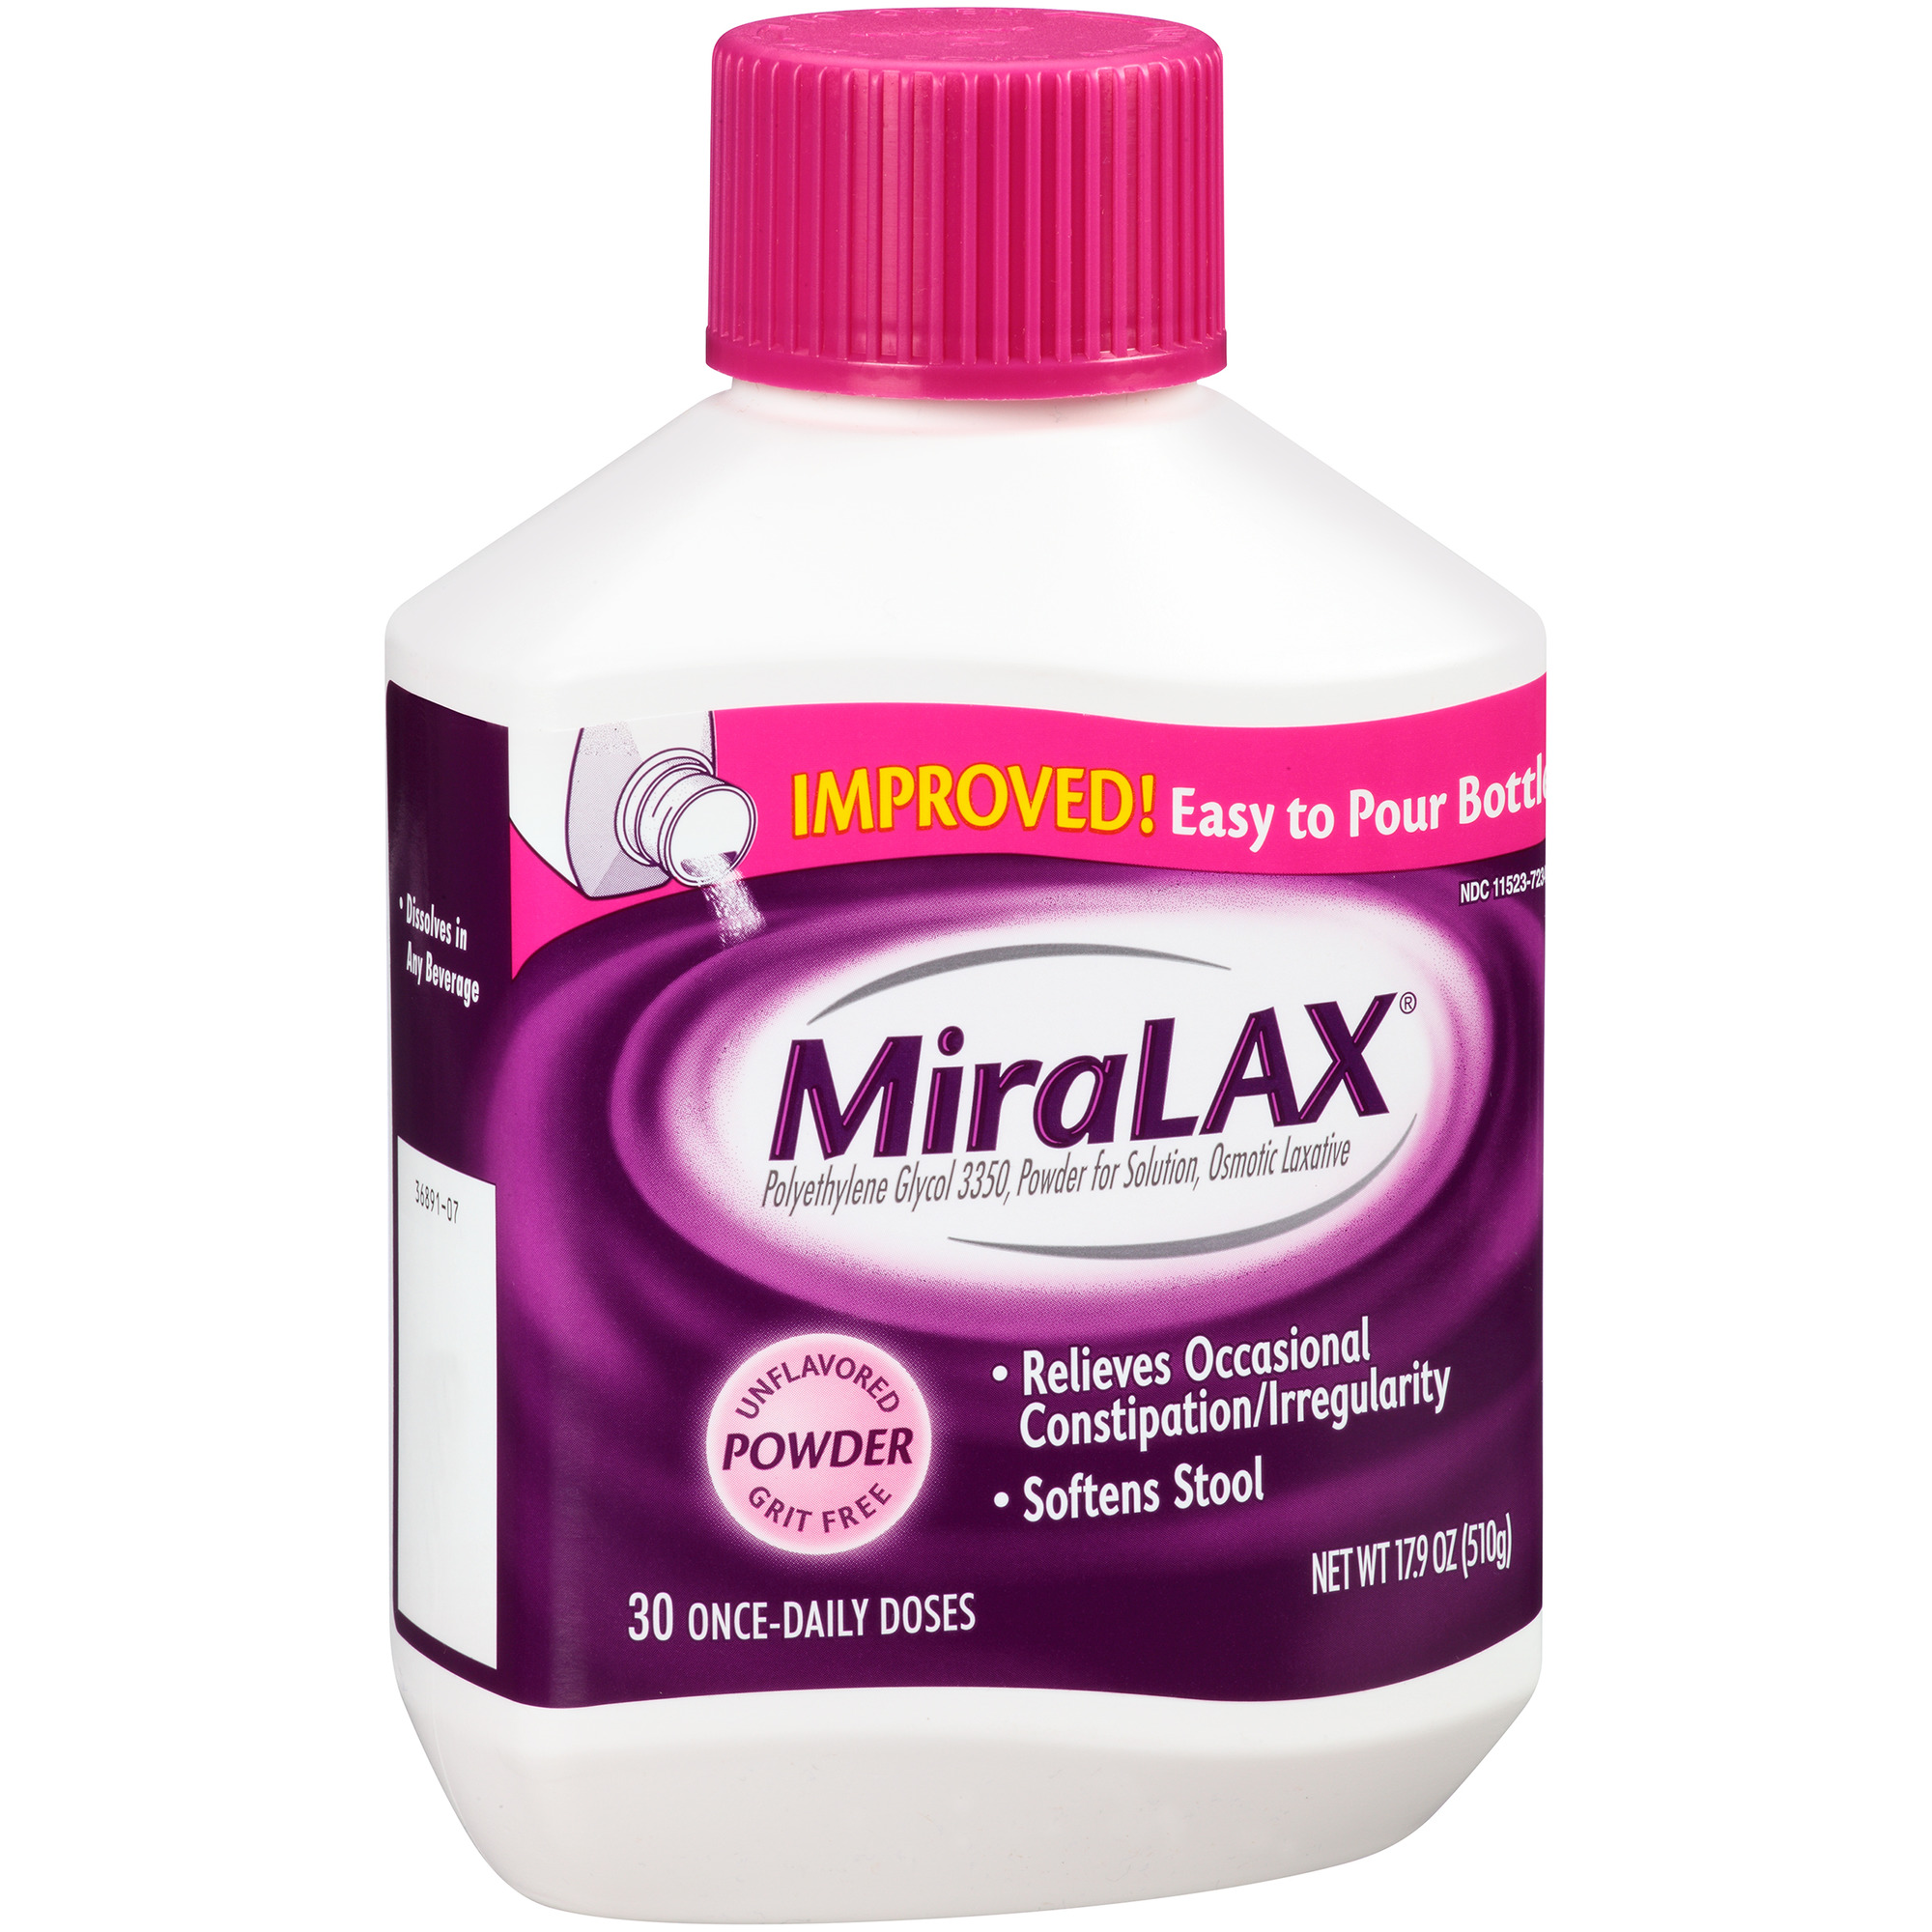 miralax laxative liquid